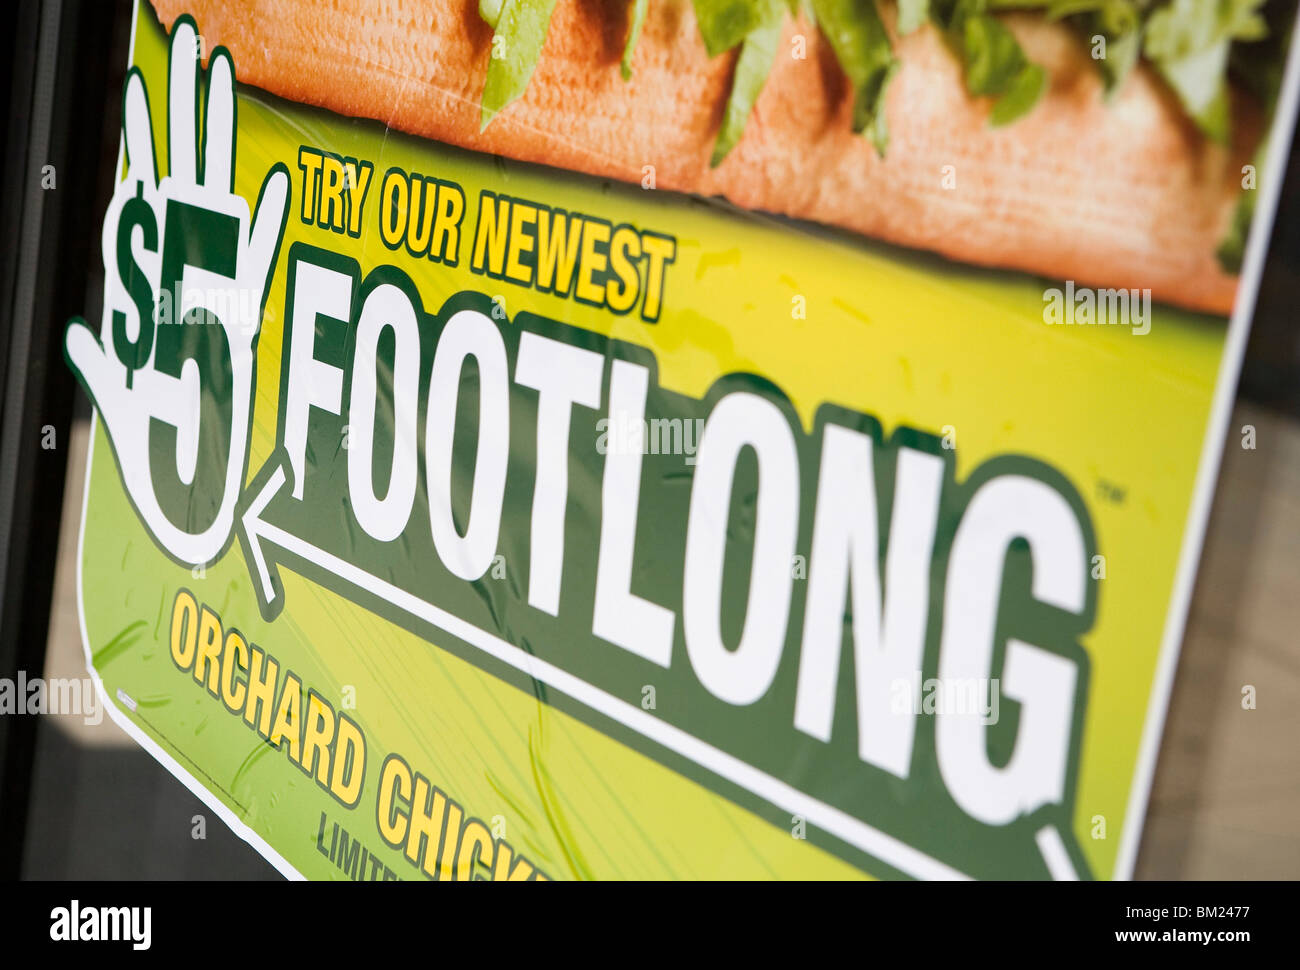 A Subway '$5 Footlong' sign.  Stock Photo